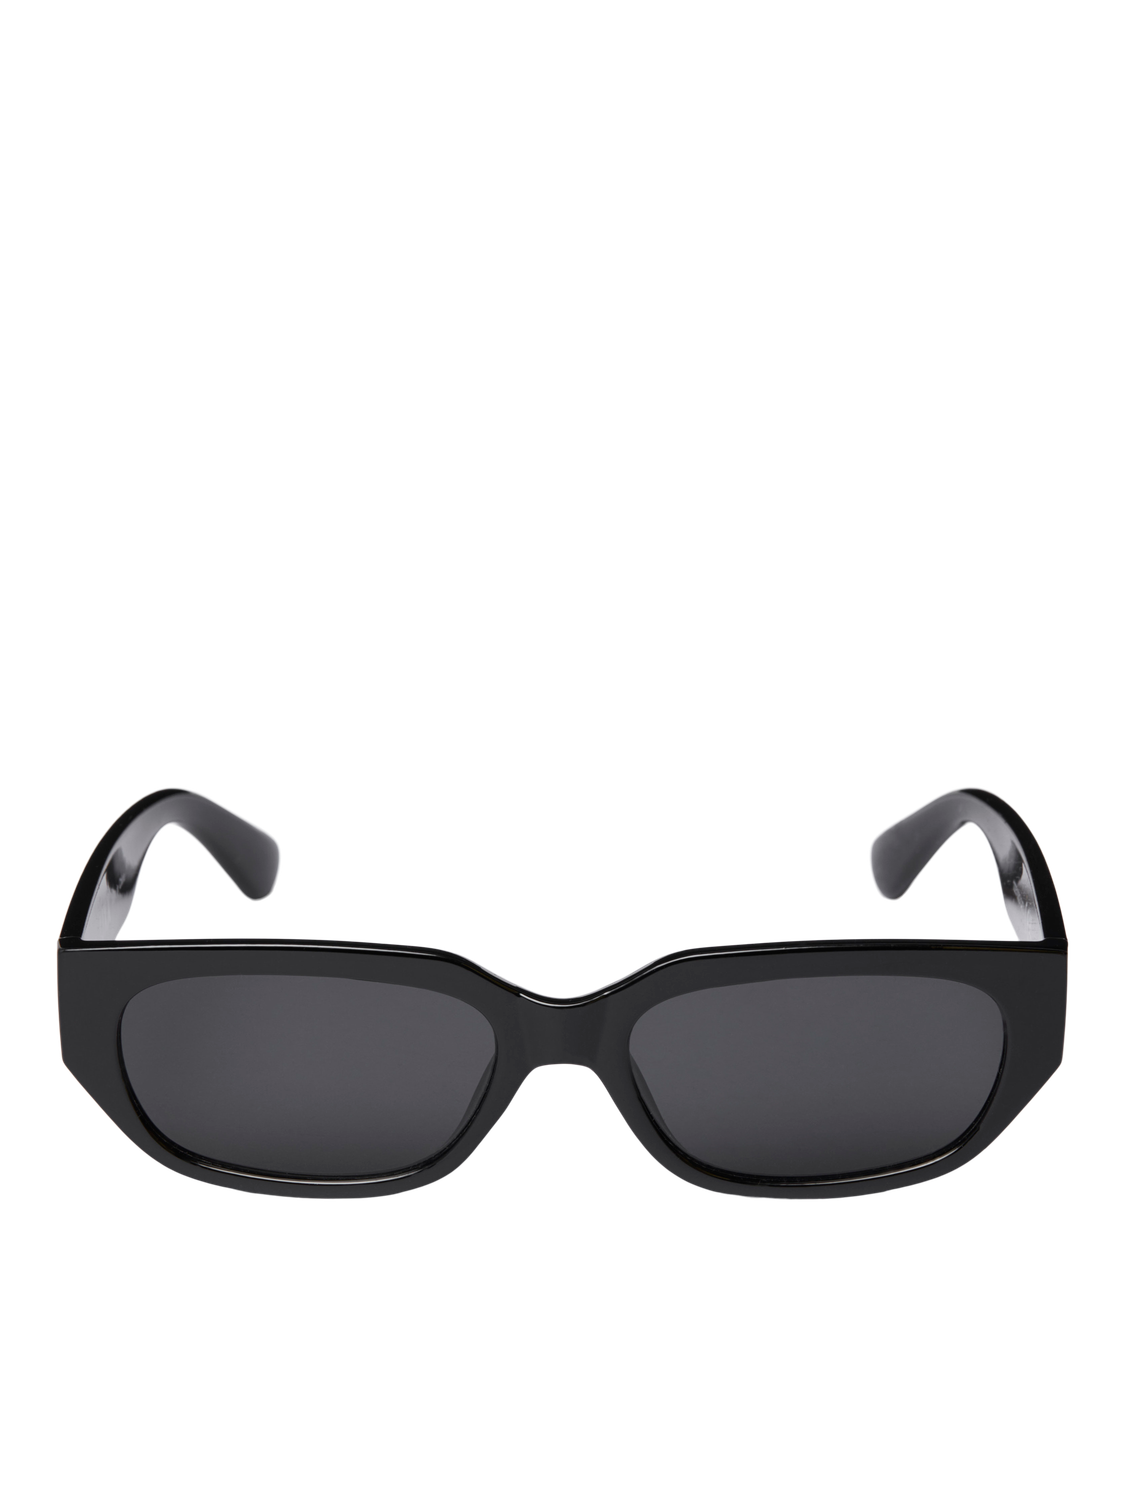 JJXX JXKANSAS Sluneční brýle -Black - 12251632